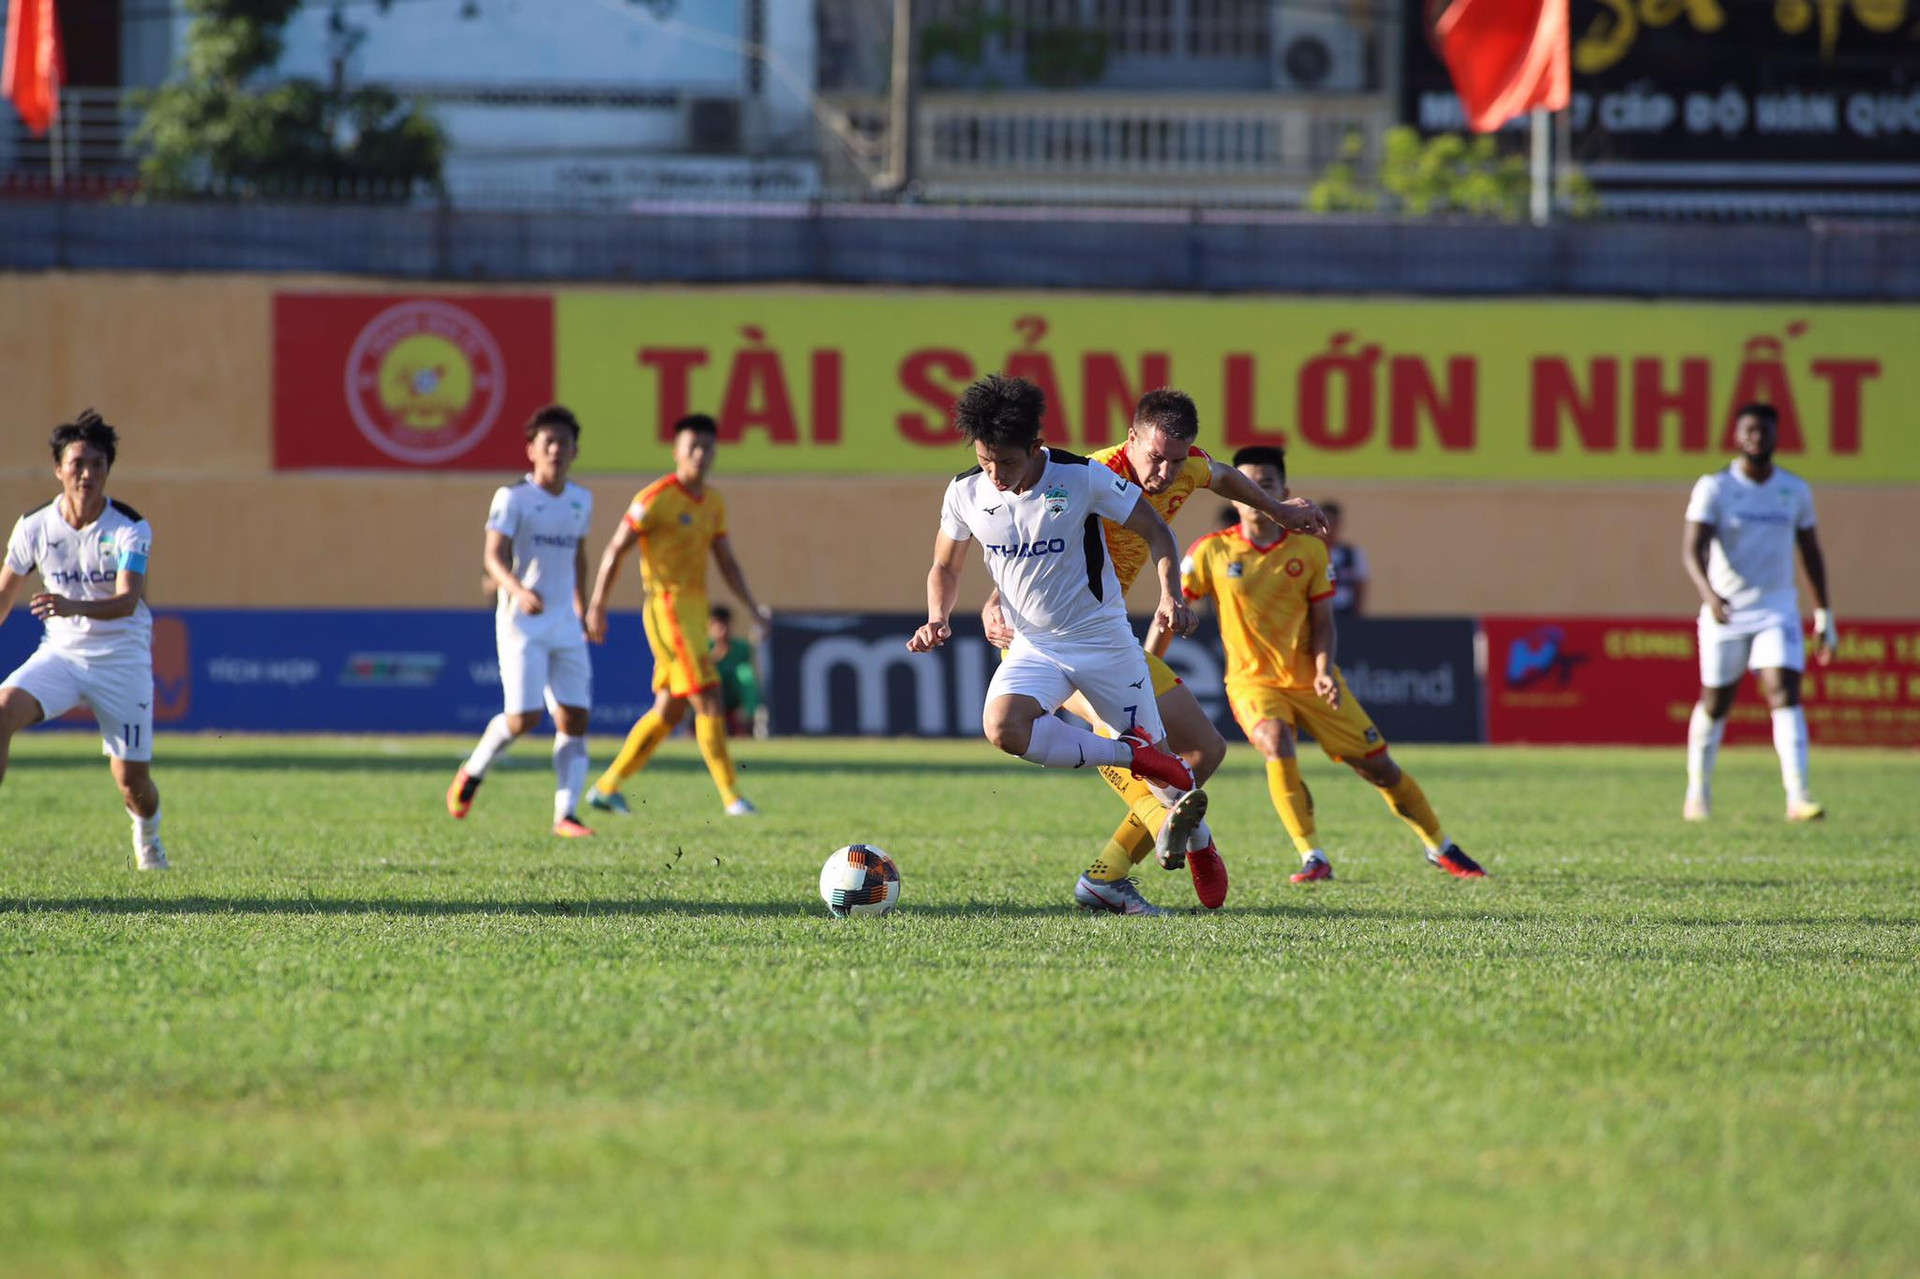 CLB Thanh Hóa lại tiếp tục ở V-League sau khi lãnh đội bị tuýt còi khi xin nghỉ ngang.